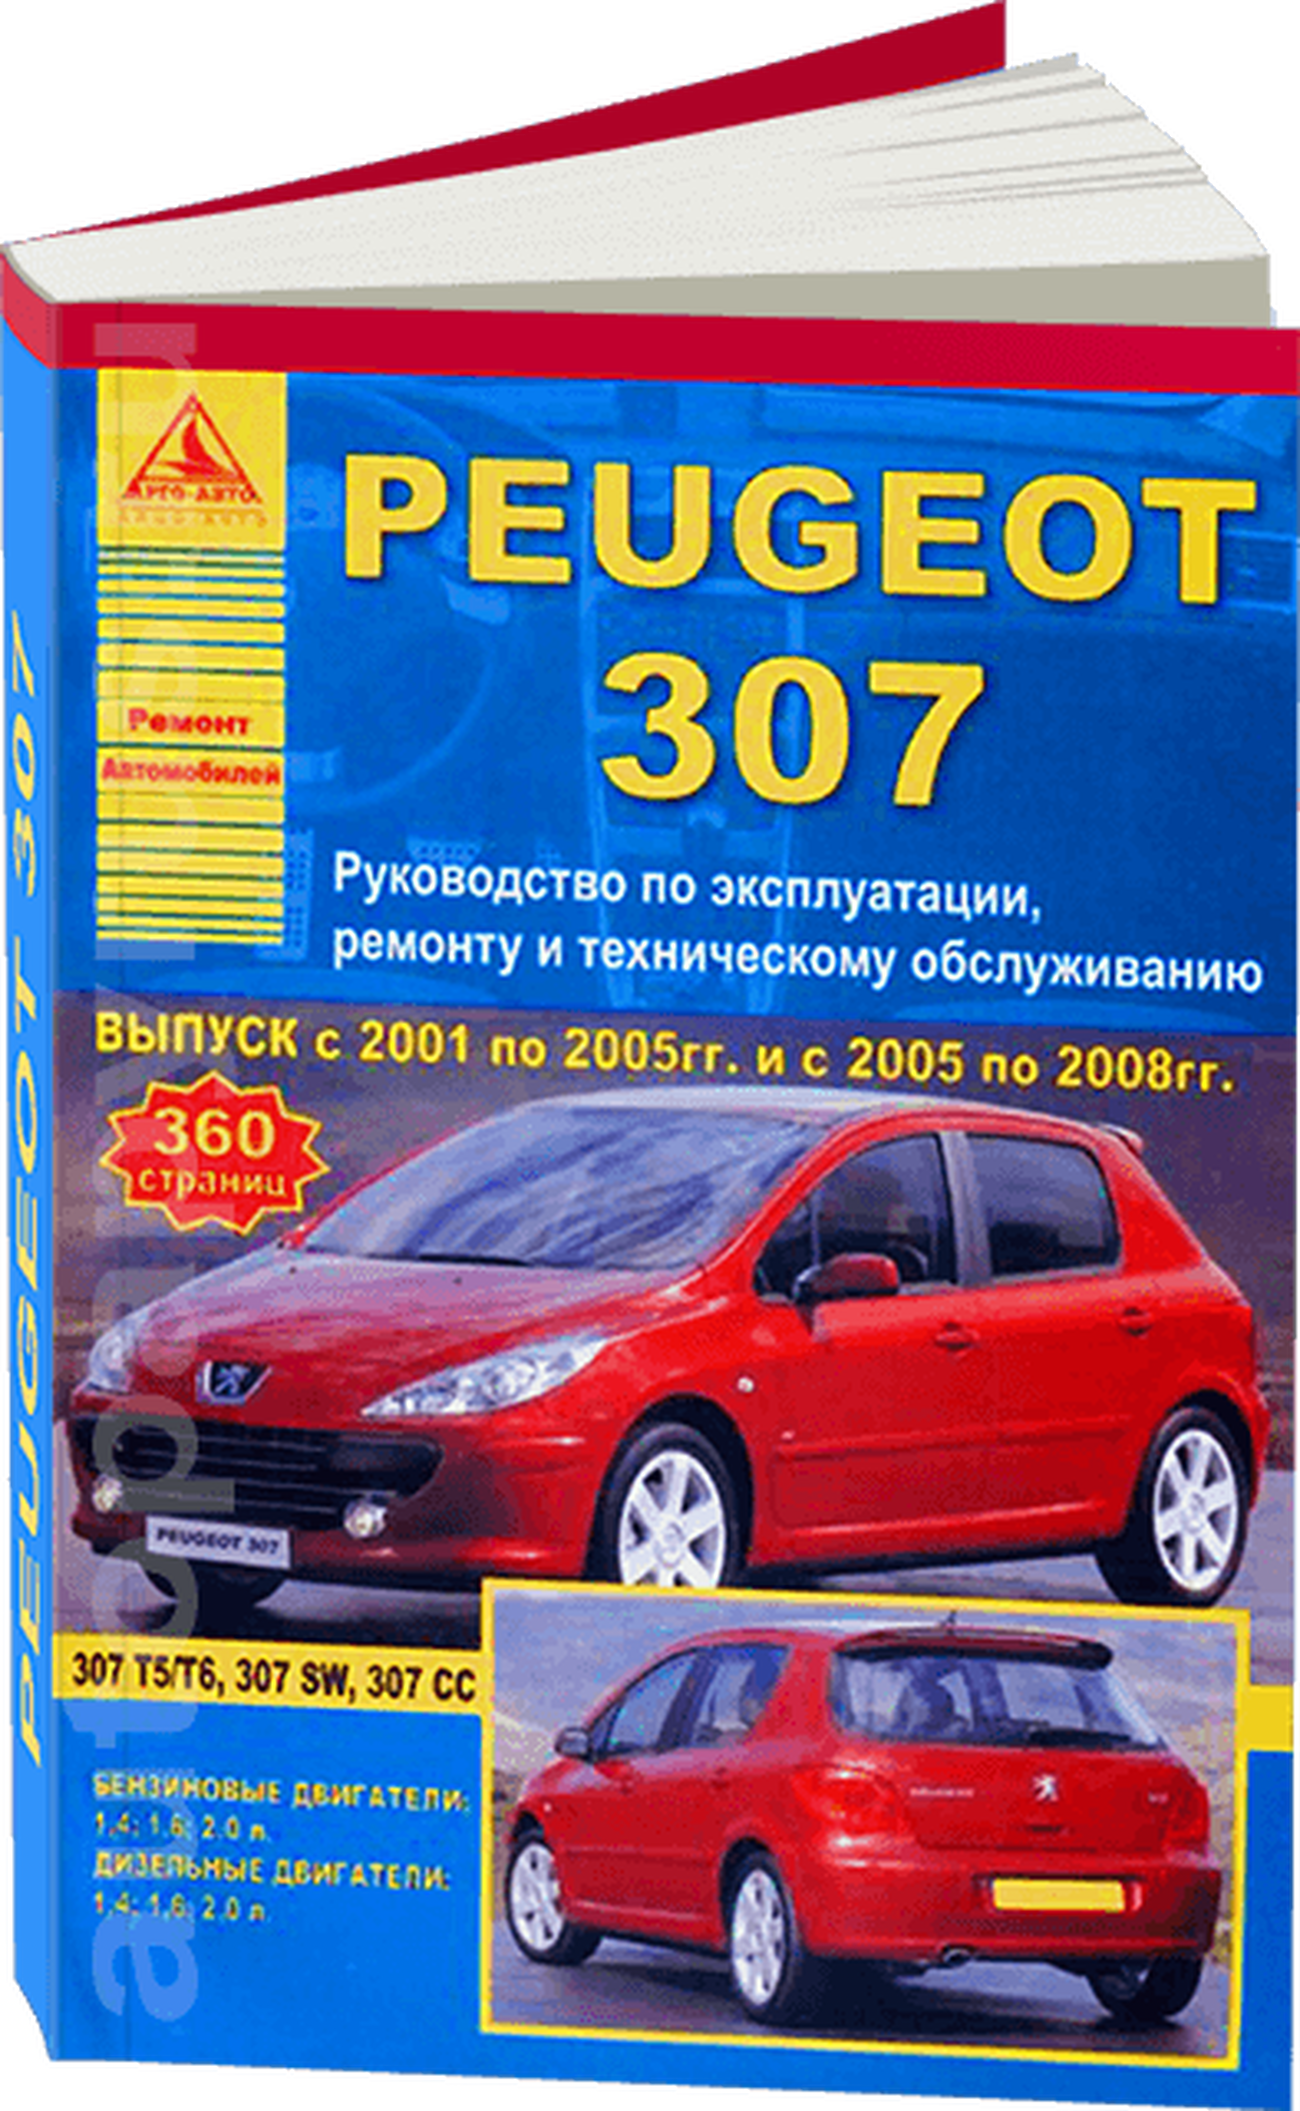 Книга: PEUGEOT 307 (б , д) 2001-2008 г.в., рем., экспл., то | Арго-Авто